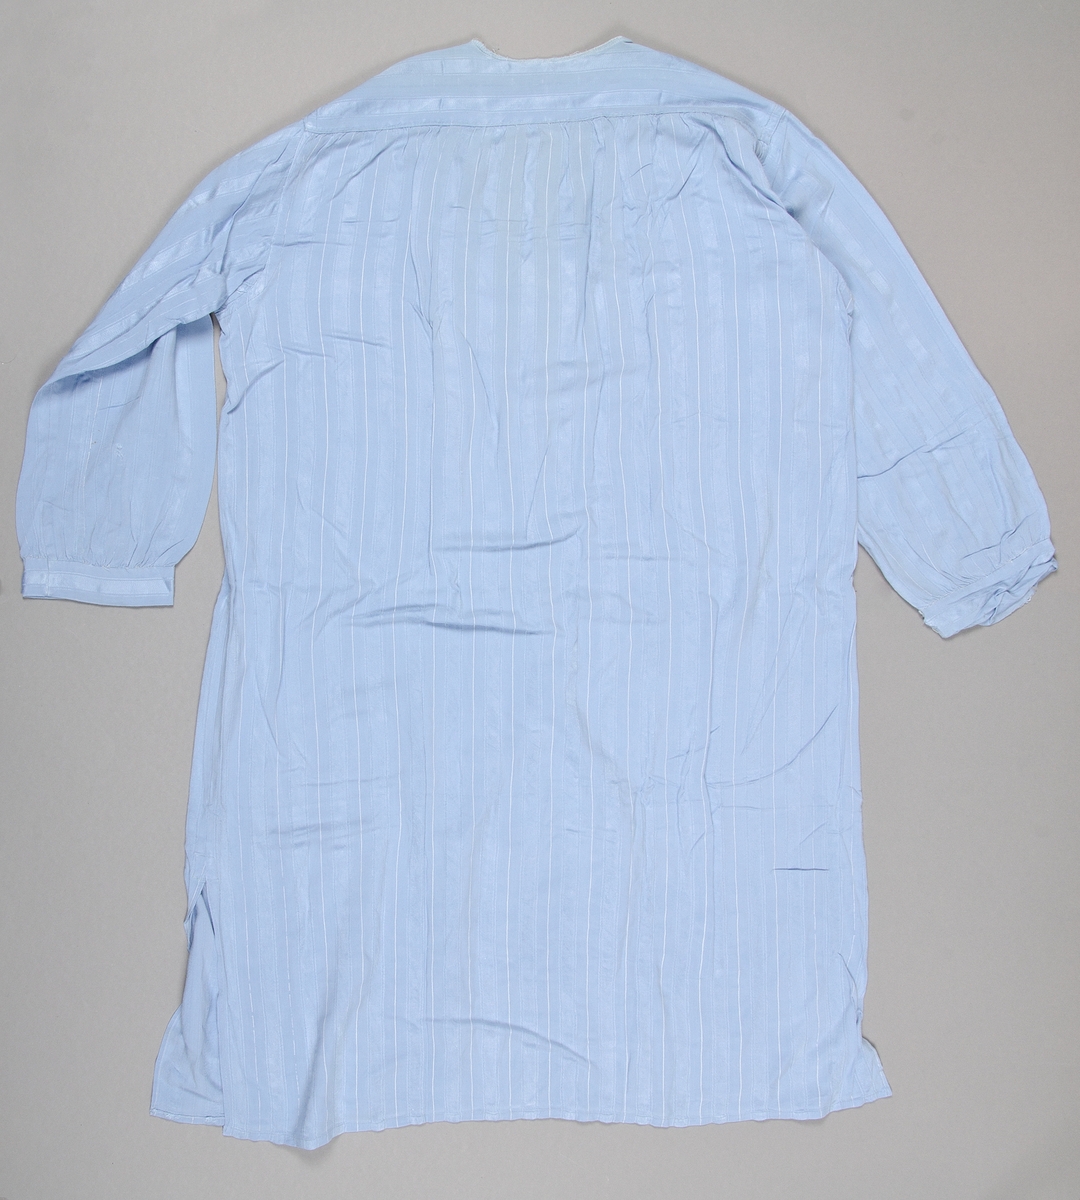 Nattskjorta av ljusblått blandat konstfibermaterial. Vävt med randig struktur med smala vita ränder. V-ringad utan krage. Knäppning framtill med två stora vita knappar.
Söndrig vid halslinningen. Nött.